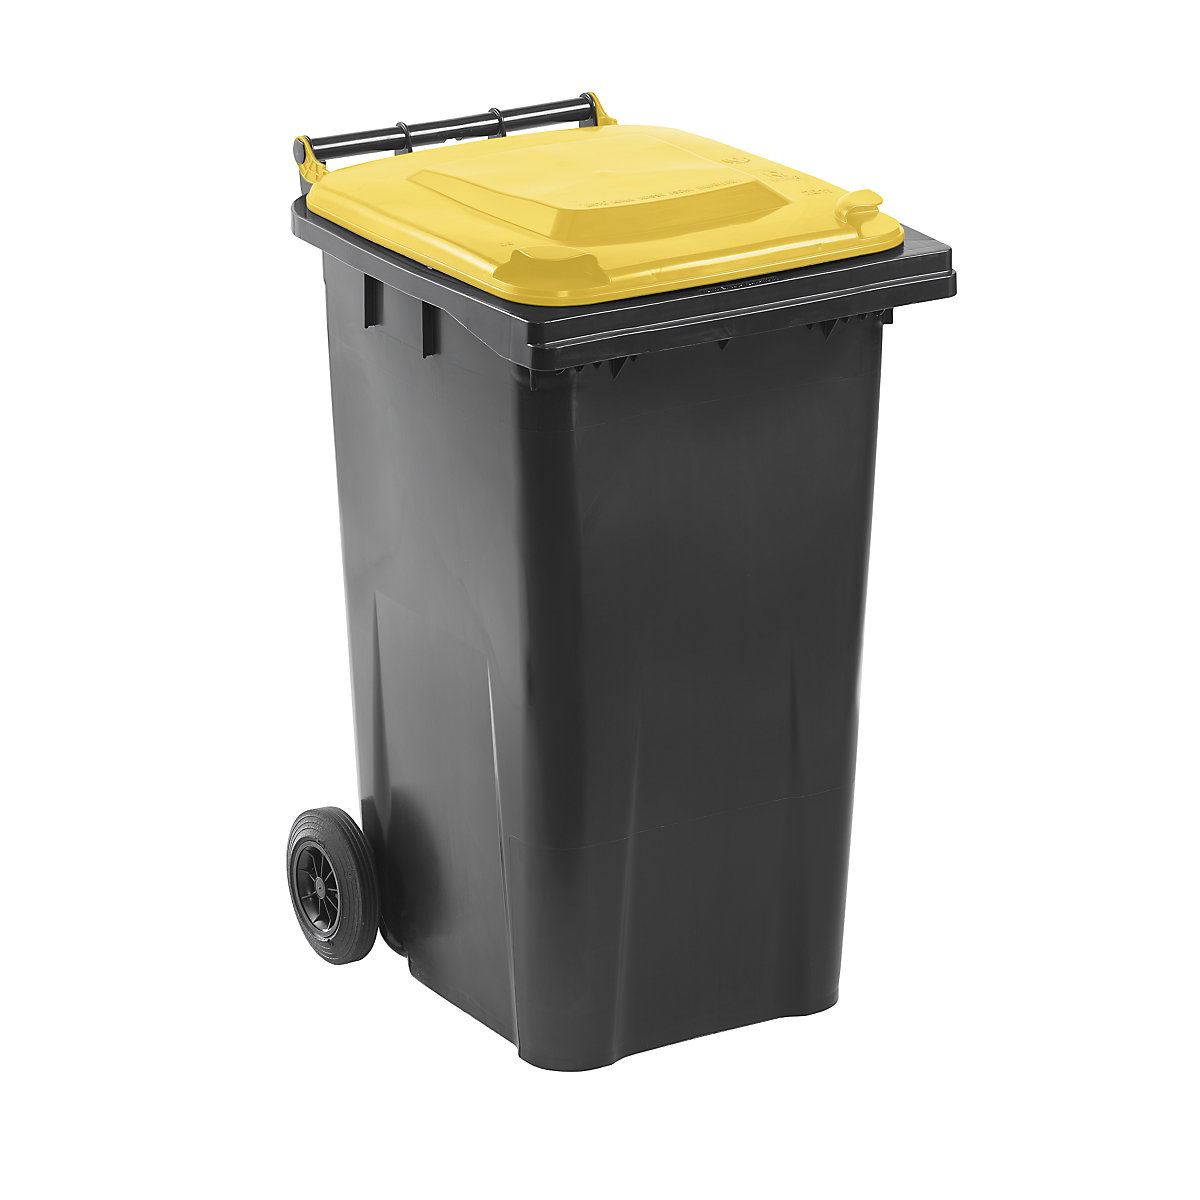 Mülltonne nach DIN EN 840, Volumen 240 l, BxHxT 580 x 1100 x 740 mm, anthrazit, Deckel gelb